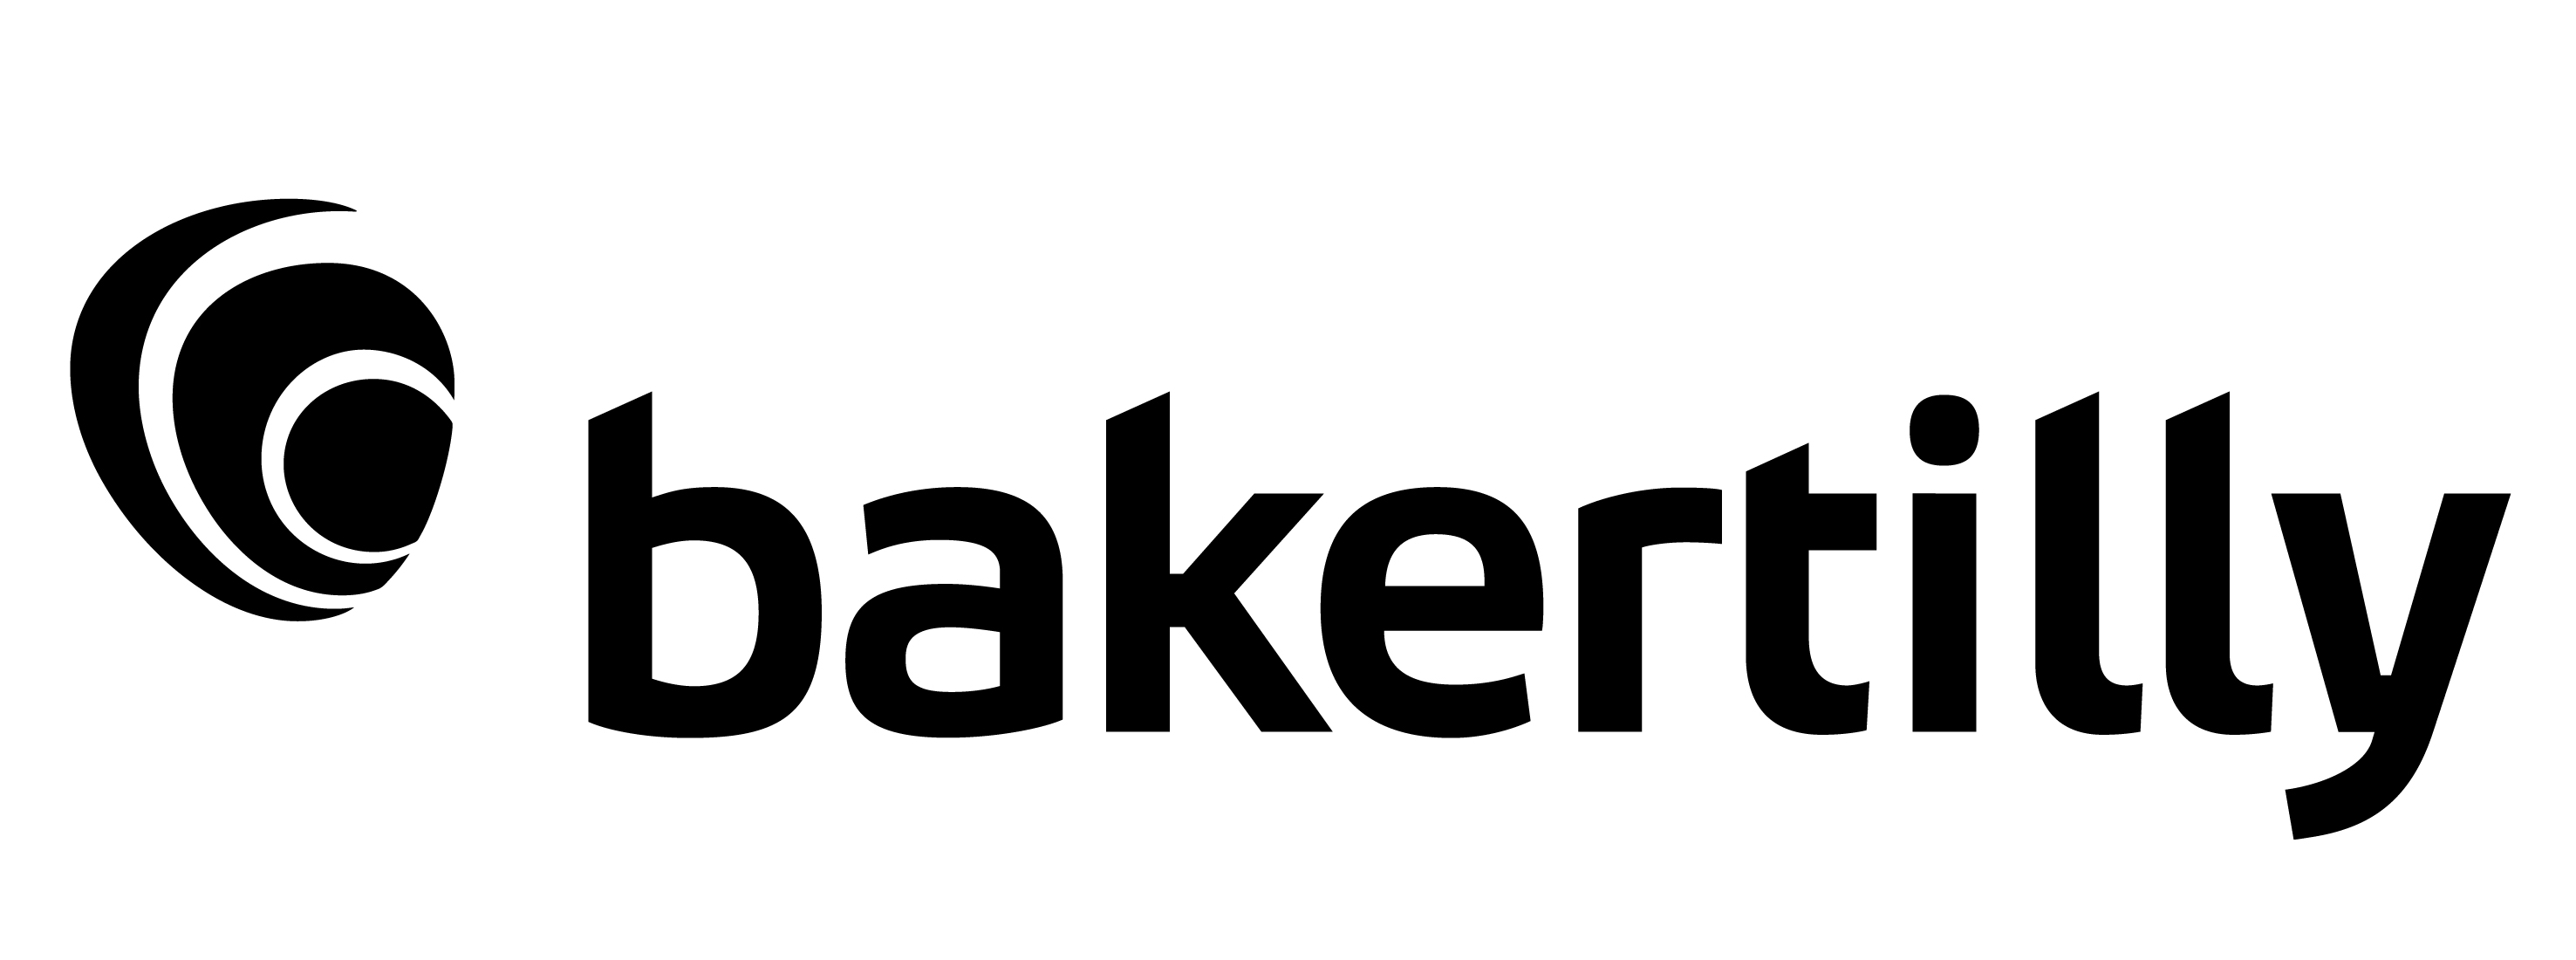 Baker Tilly Logo 01